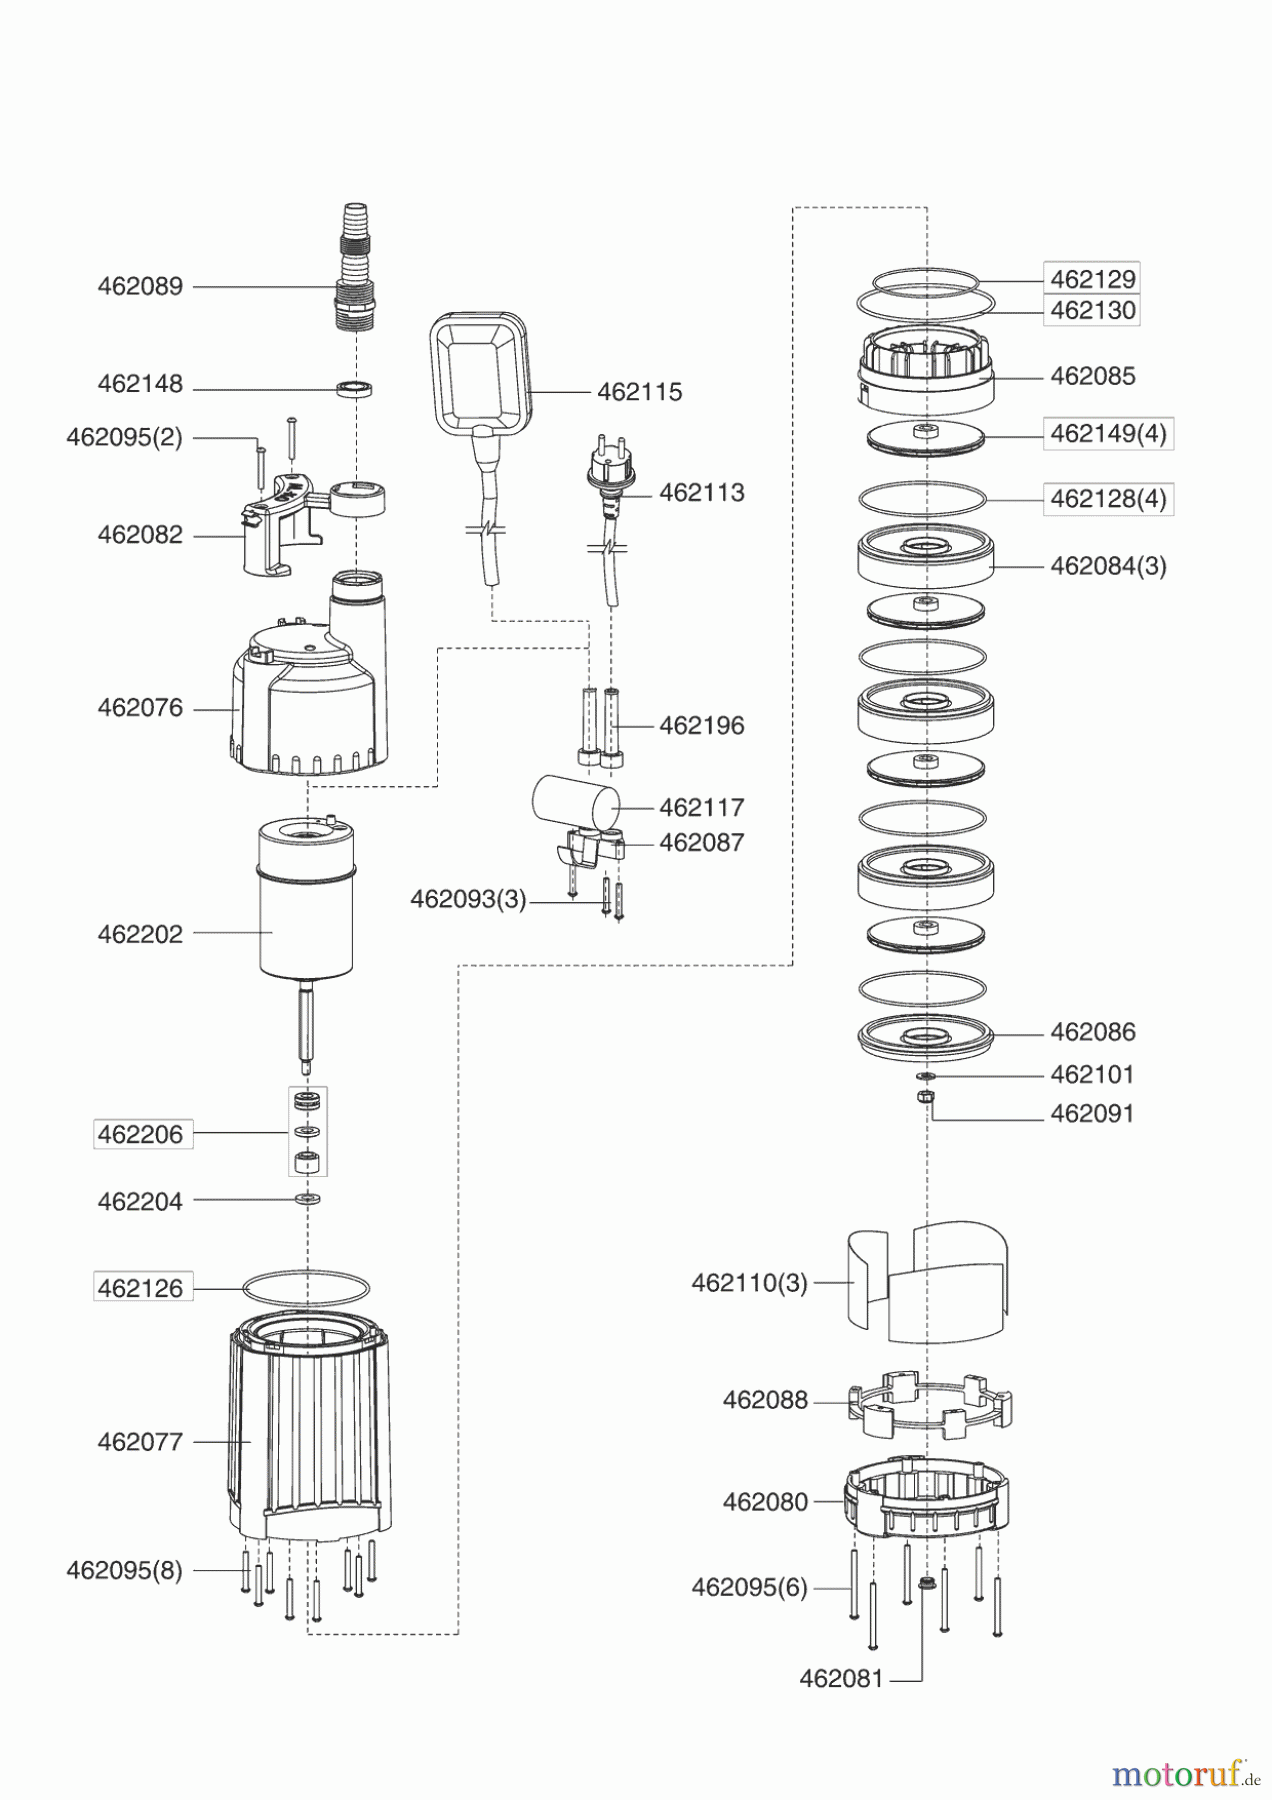  AL-KO Wassertechnik Tauchdruckpumpen TDS 1201-4  12/2005 Seite 1